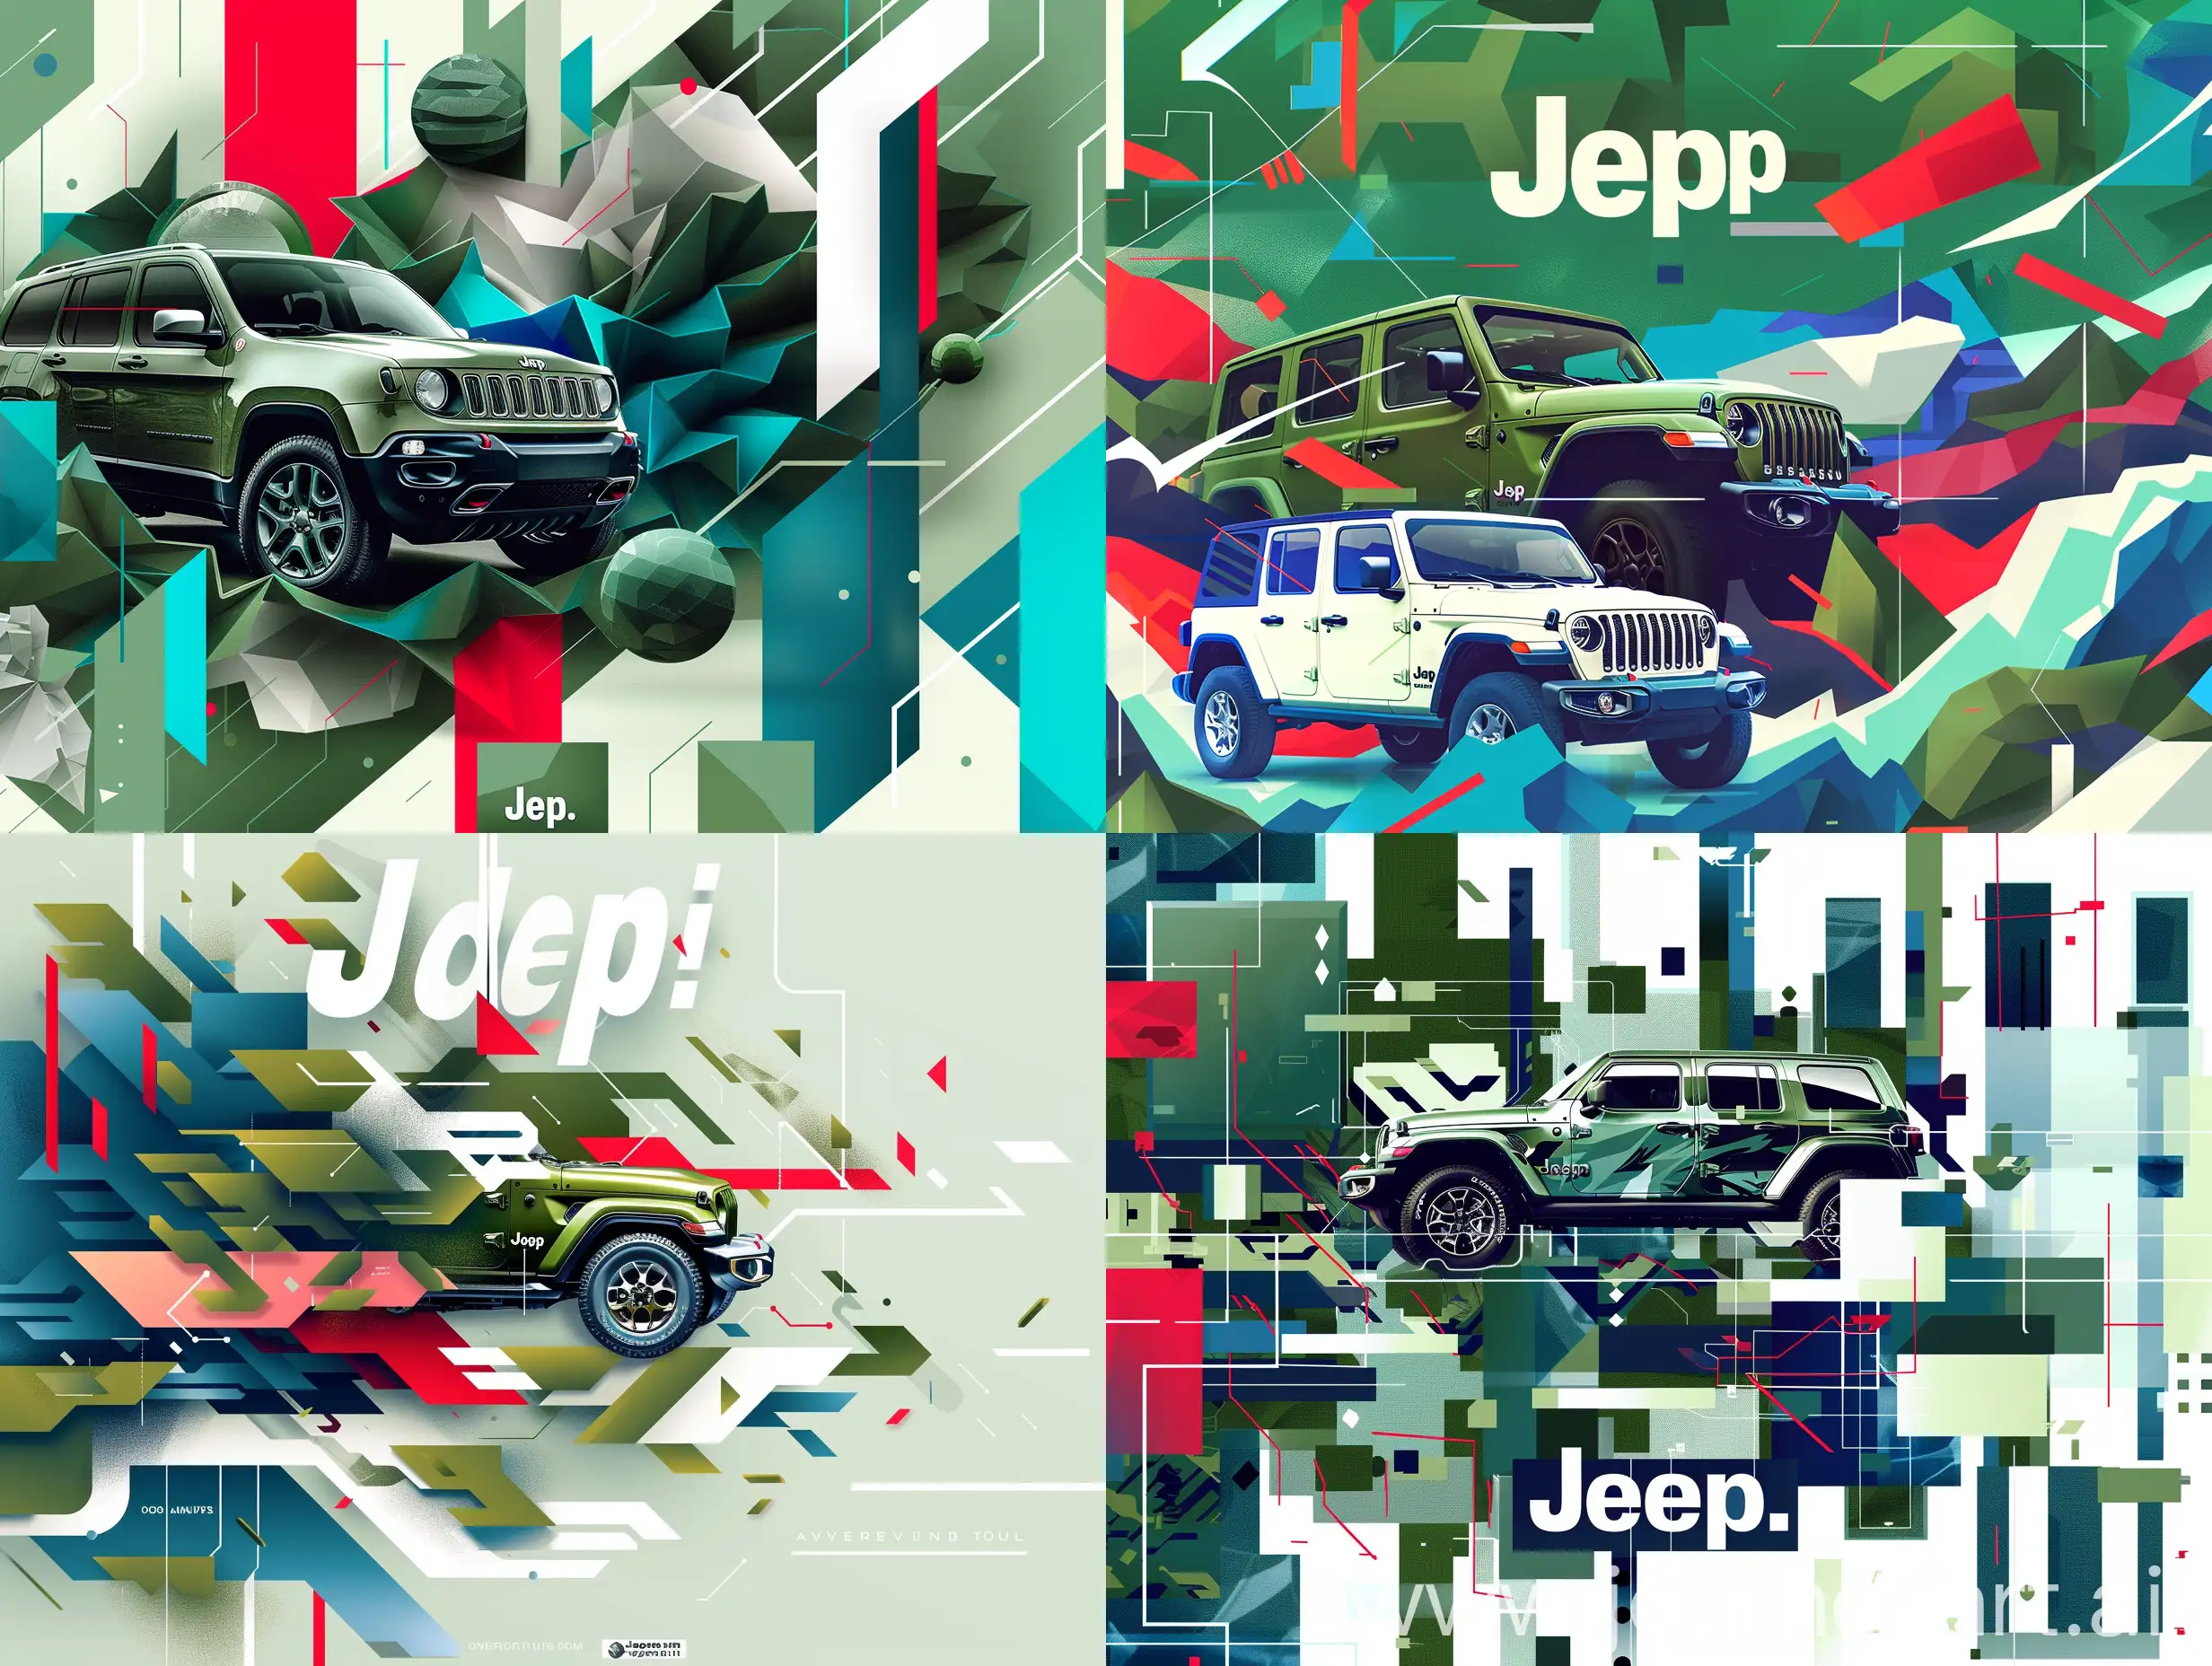 Jeep markasının özünü temsil eden ve kesinlikle araba görseli kullanmayan 20x8 cm boyutlarında (yatayda 20 cm) bir soyut arka plan tasarımı oluşturun. Tarihi kökenlerini sembolize etmek için retro askeri yeşil geometrik şekiller kullanın. Macera ruhunu turuncu, mavi ve yeşil gibi doğal renklerde dinamik, akıcı formlarla betimleyin. Modern teknolojiyi beyaz, metalik gri ve neon gibi parlak, kontrast renklerde minimalist, futuristik şekillerle ifade edin. Son olarak, Jeep’in sürdürülebilirlik ve geleceğe yönelik yenilik taahhüdünü açık yeşil ve mavi renklerde yumuşak, akıcı çizgilerle temsil edin. Tasarım, Jeep'in efsanevi yolculuğunu ve temel değerlerini soyut bir şekilde yansıtmalıdır.